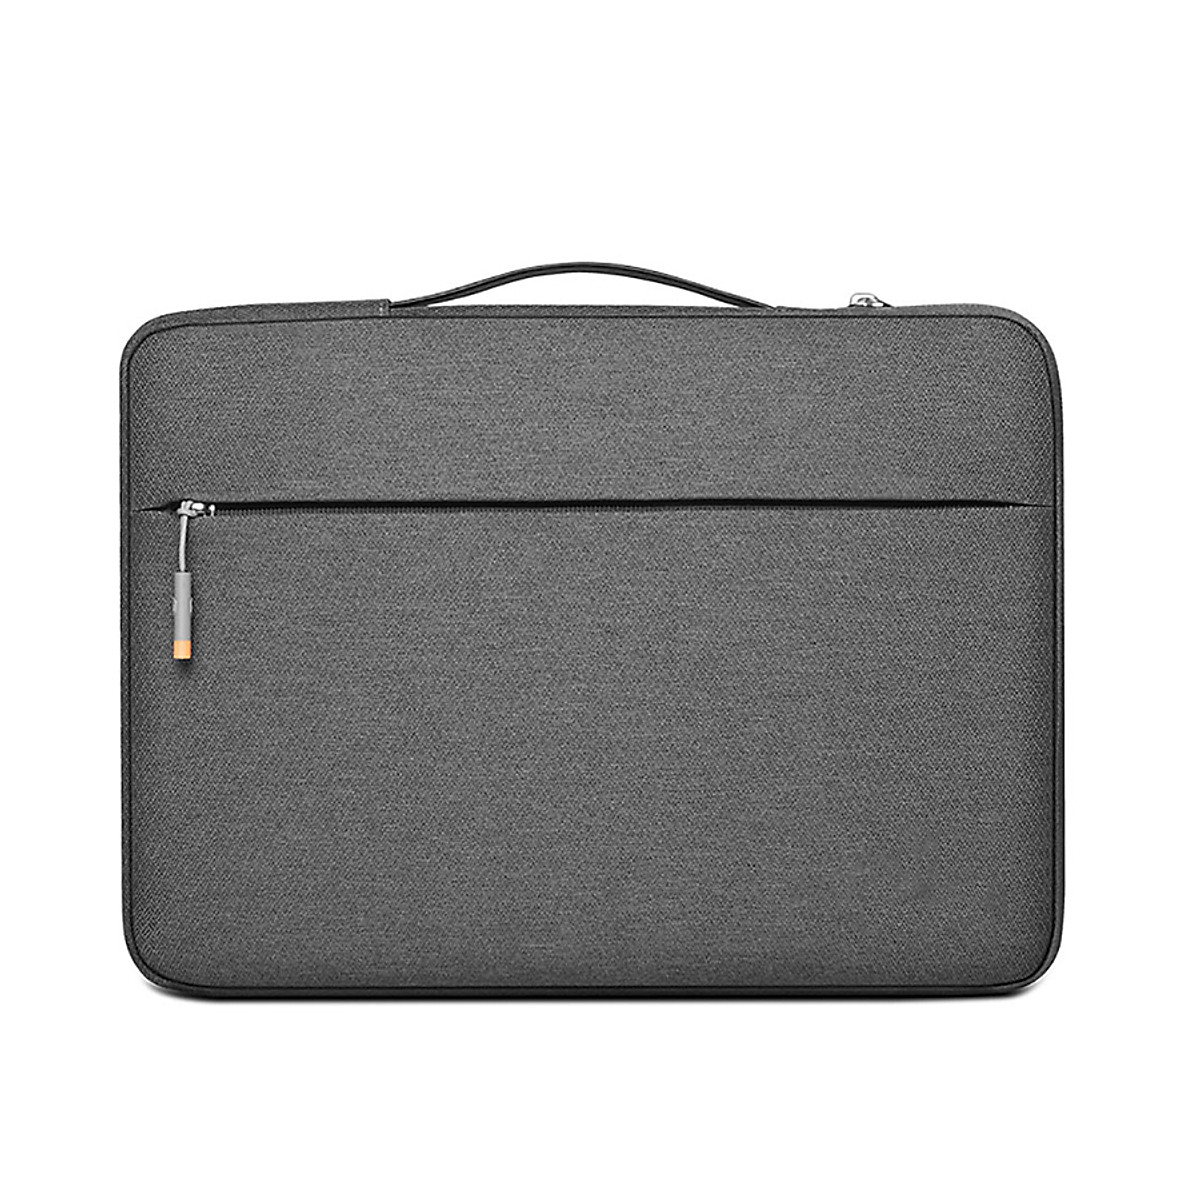 Túi xách Laptop, Macbook chống sốc : 13 - 15.6 inch W351 - Hàng Nhập Khẩu - 15 inch